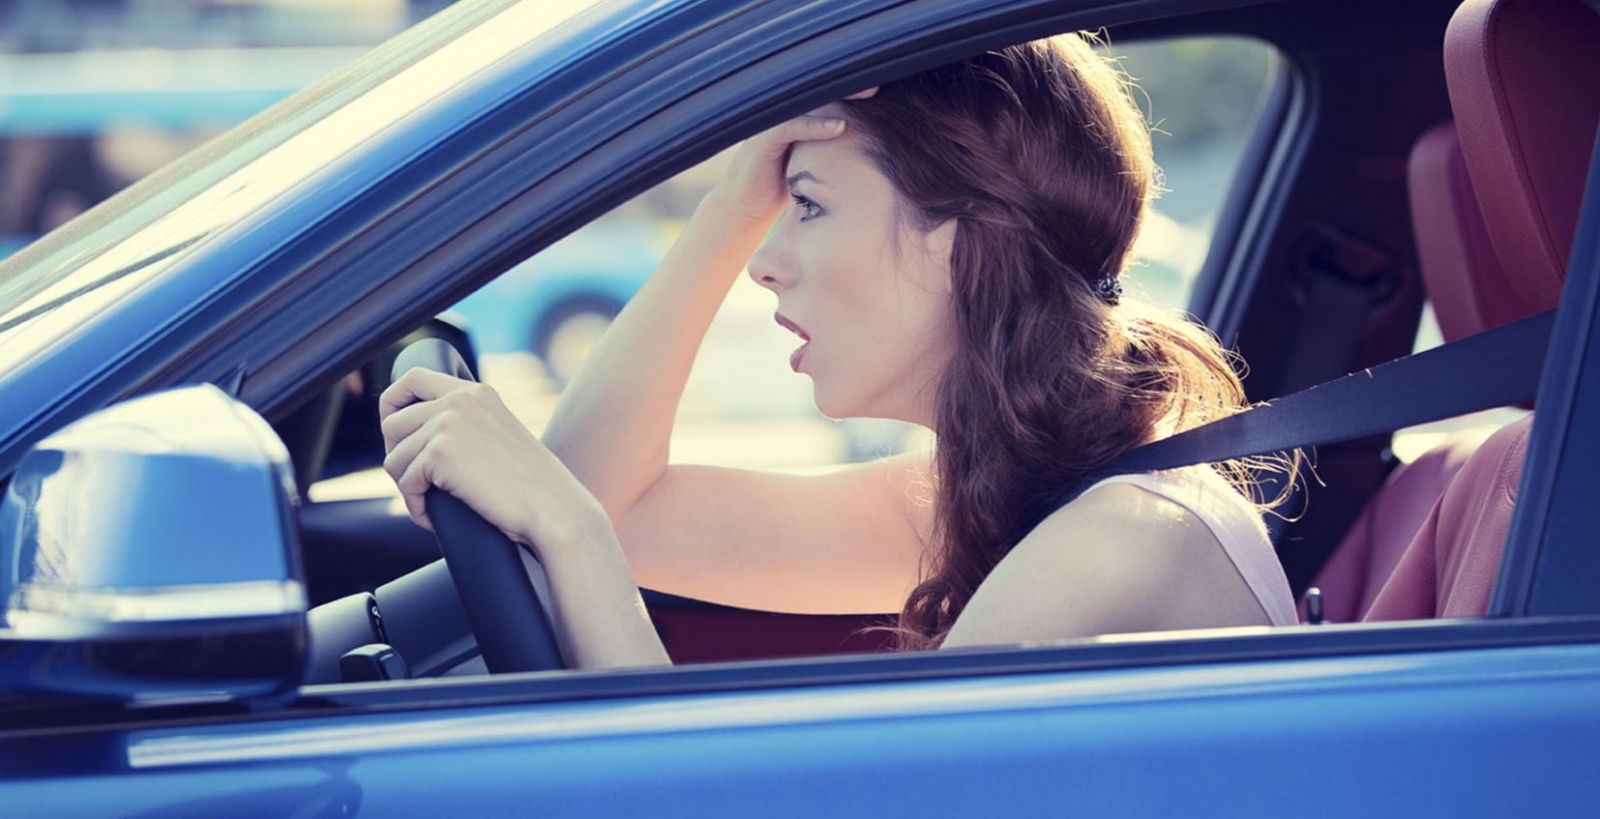 Chị em phụ nữ lái xe thường lóng ngóng, dễ gặp “sự cố” hơn